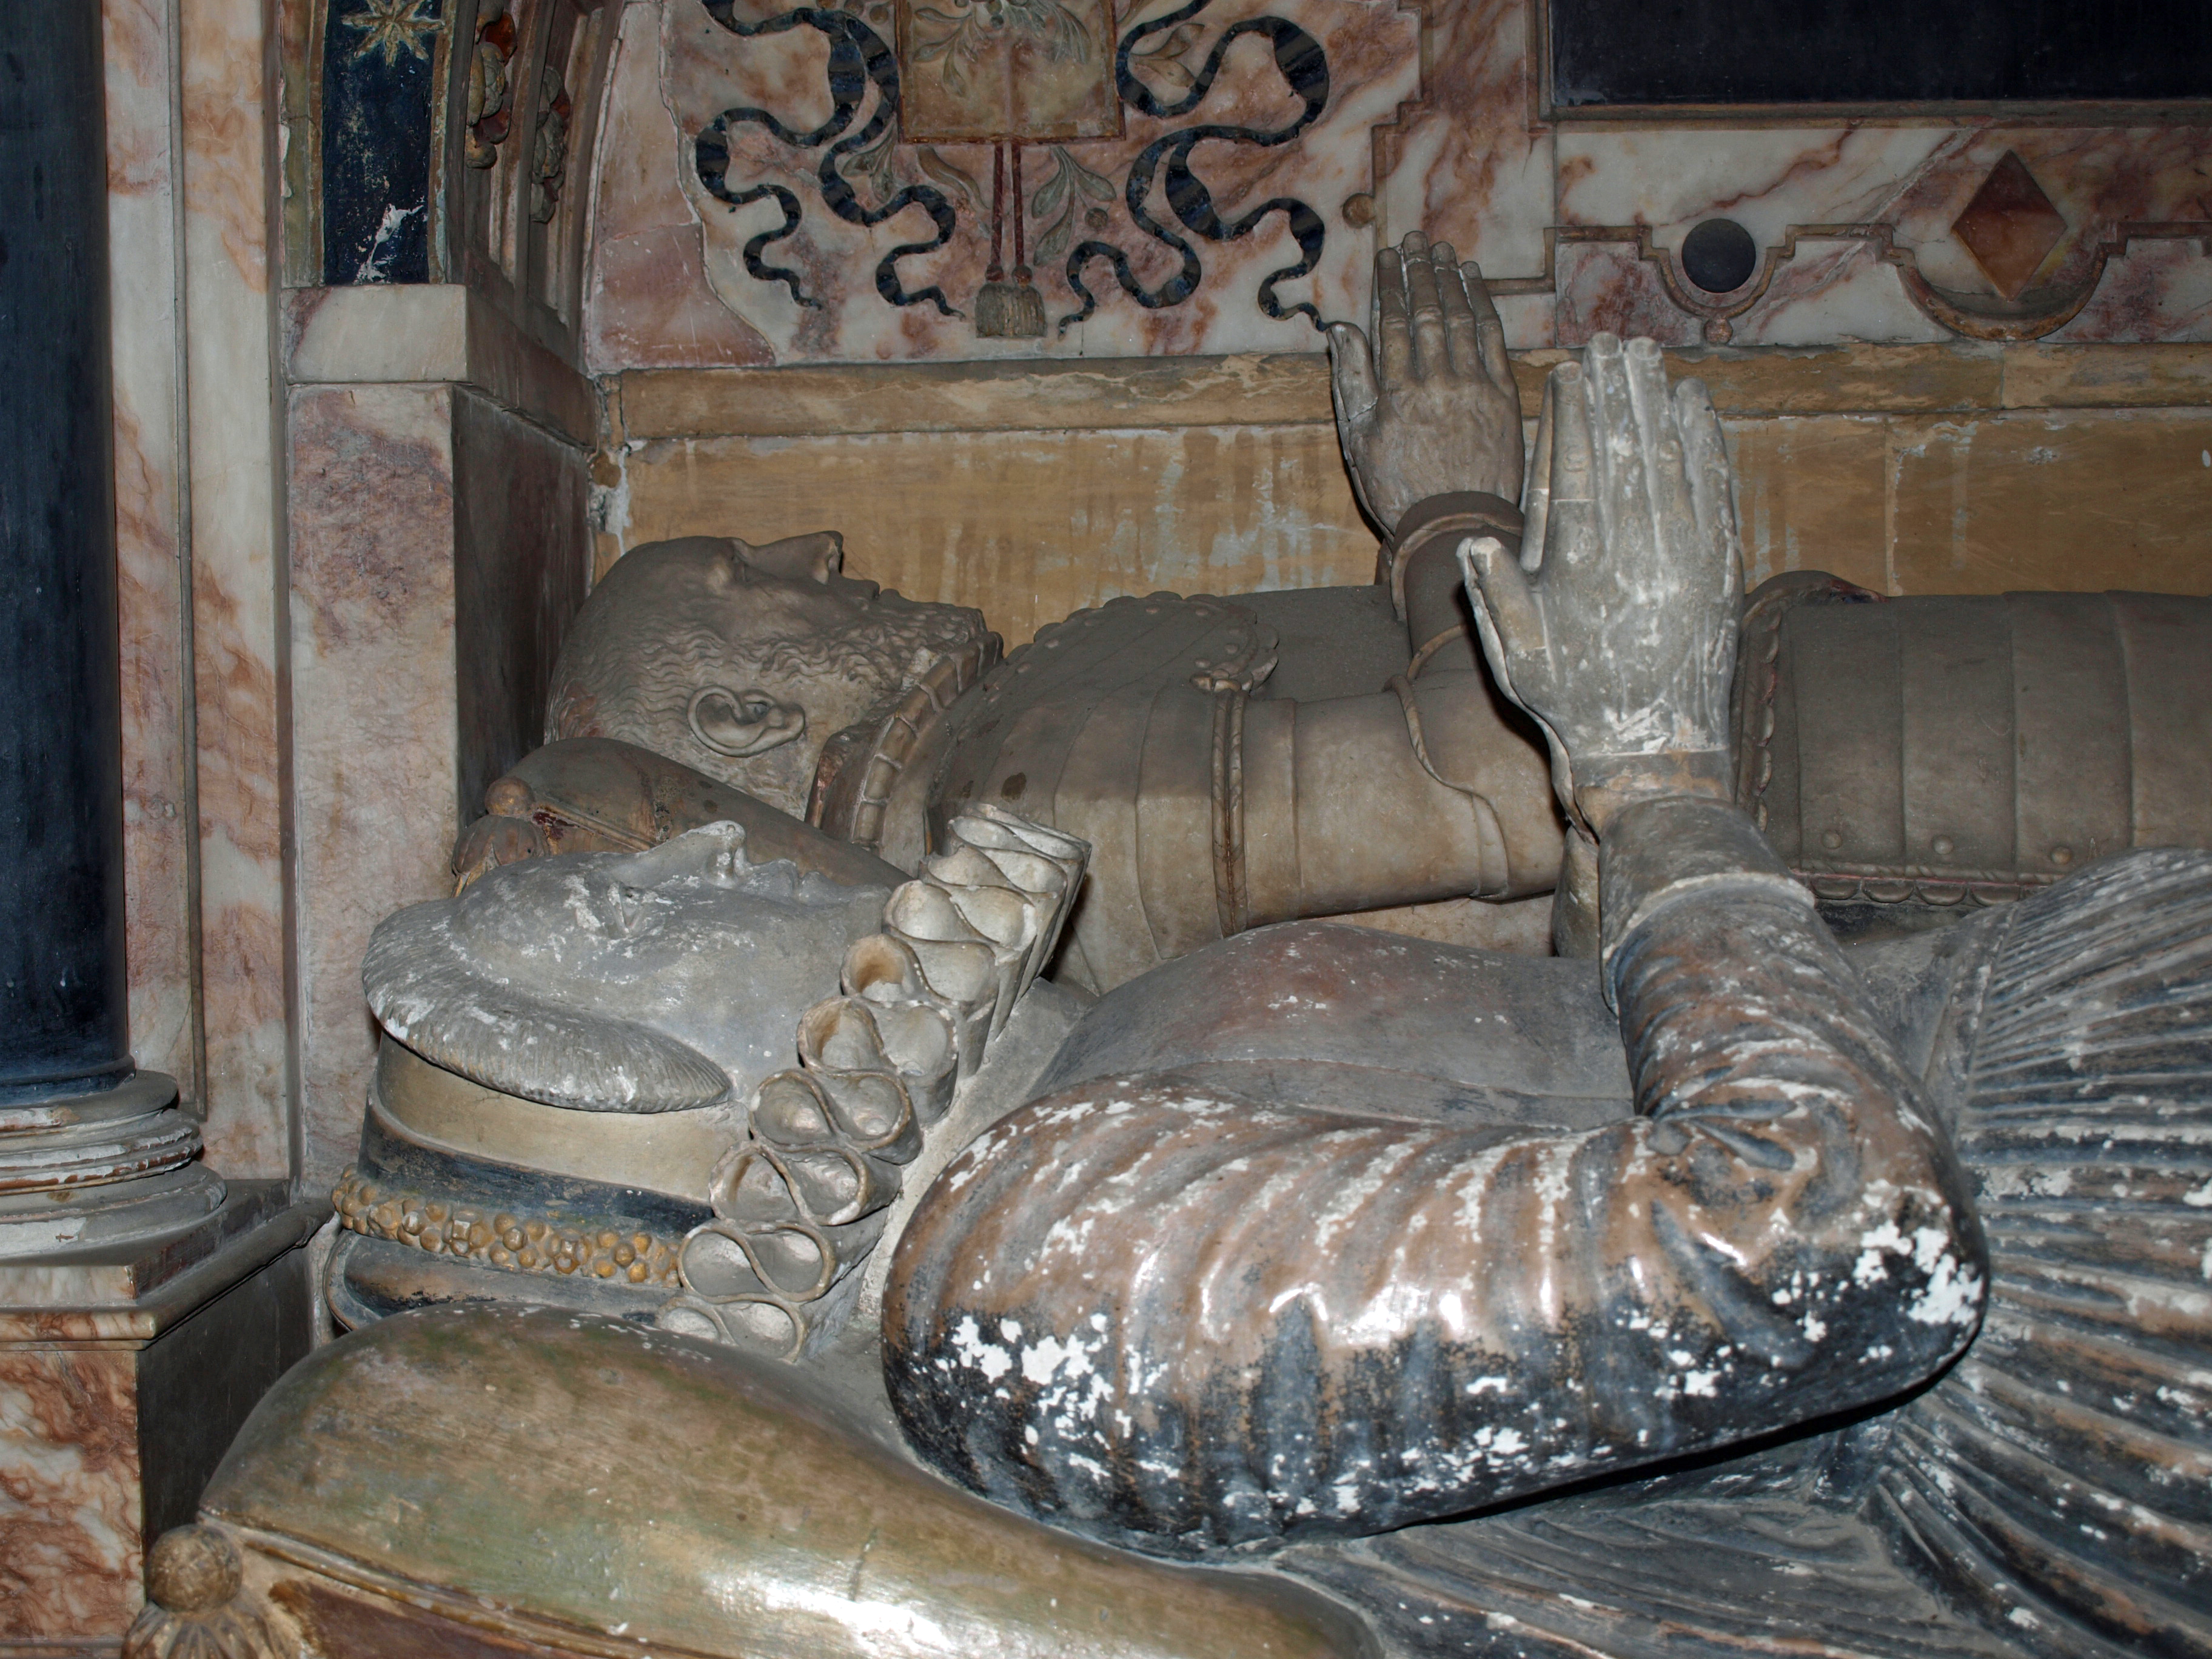 1606 - Thomas Sadleir tomb